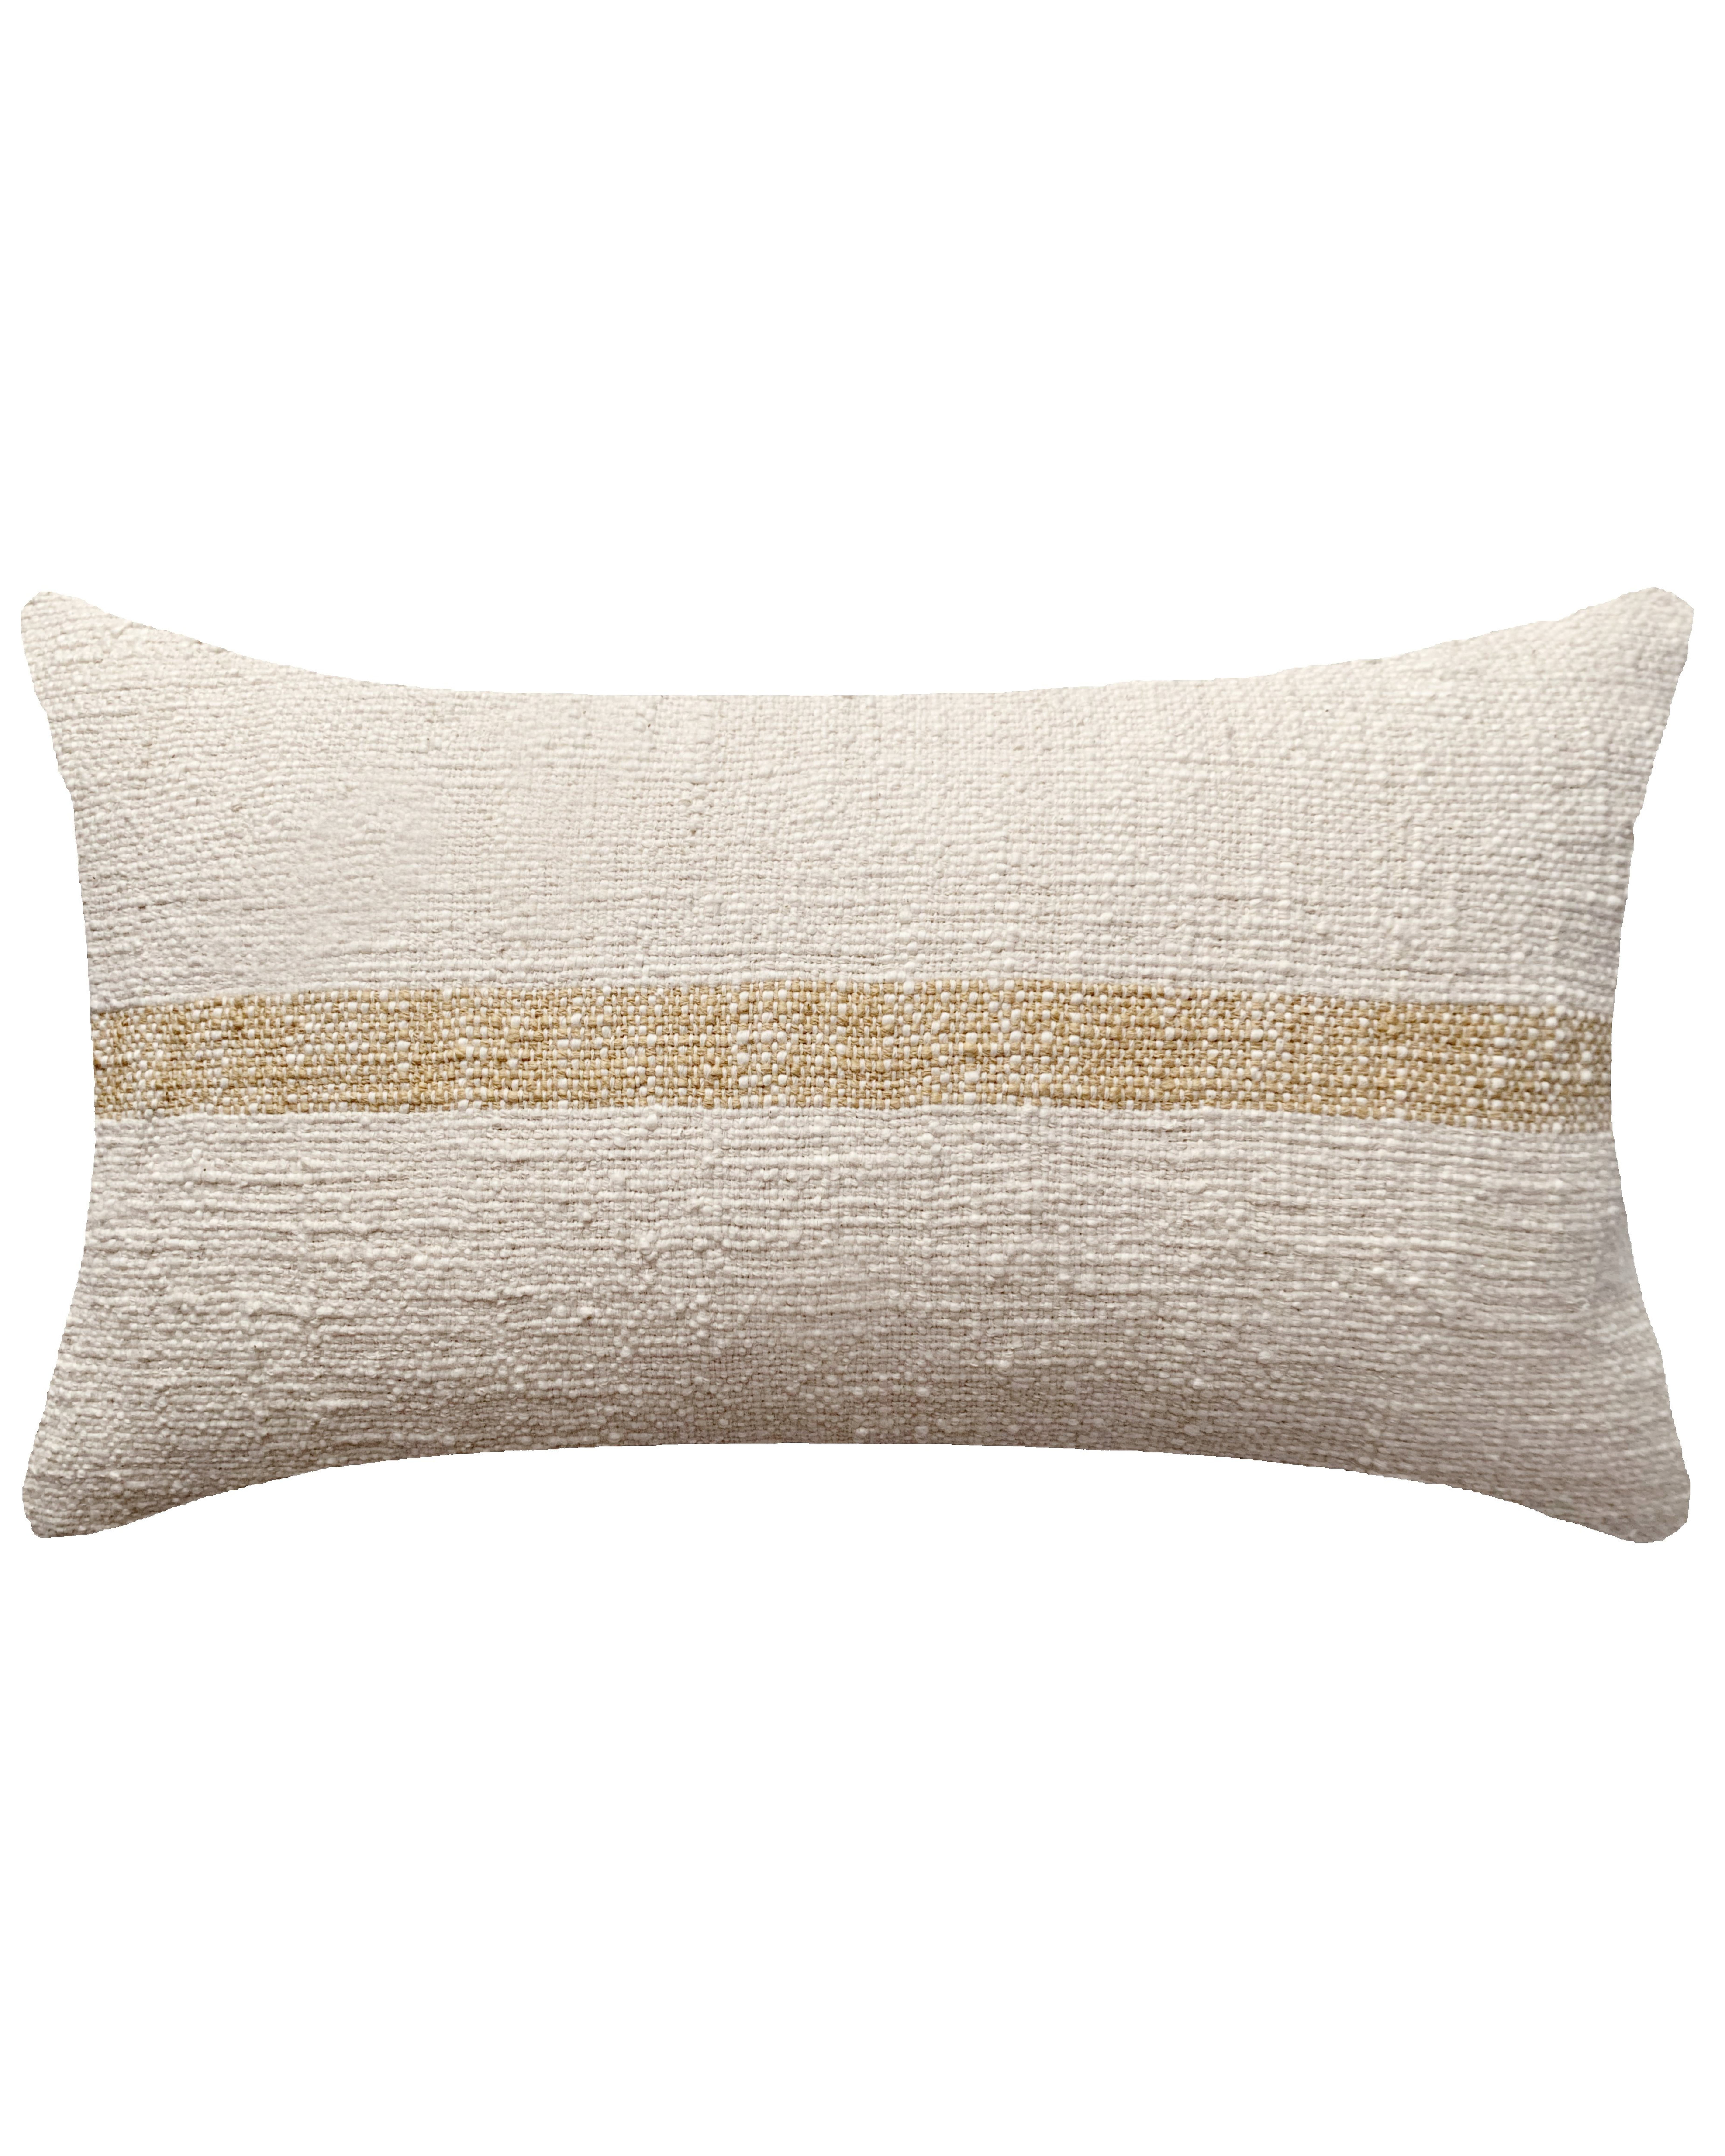 Linus Lumbar Pillow Cover, Dune, 20" x 12" - PillowPia